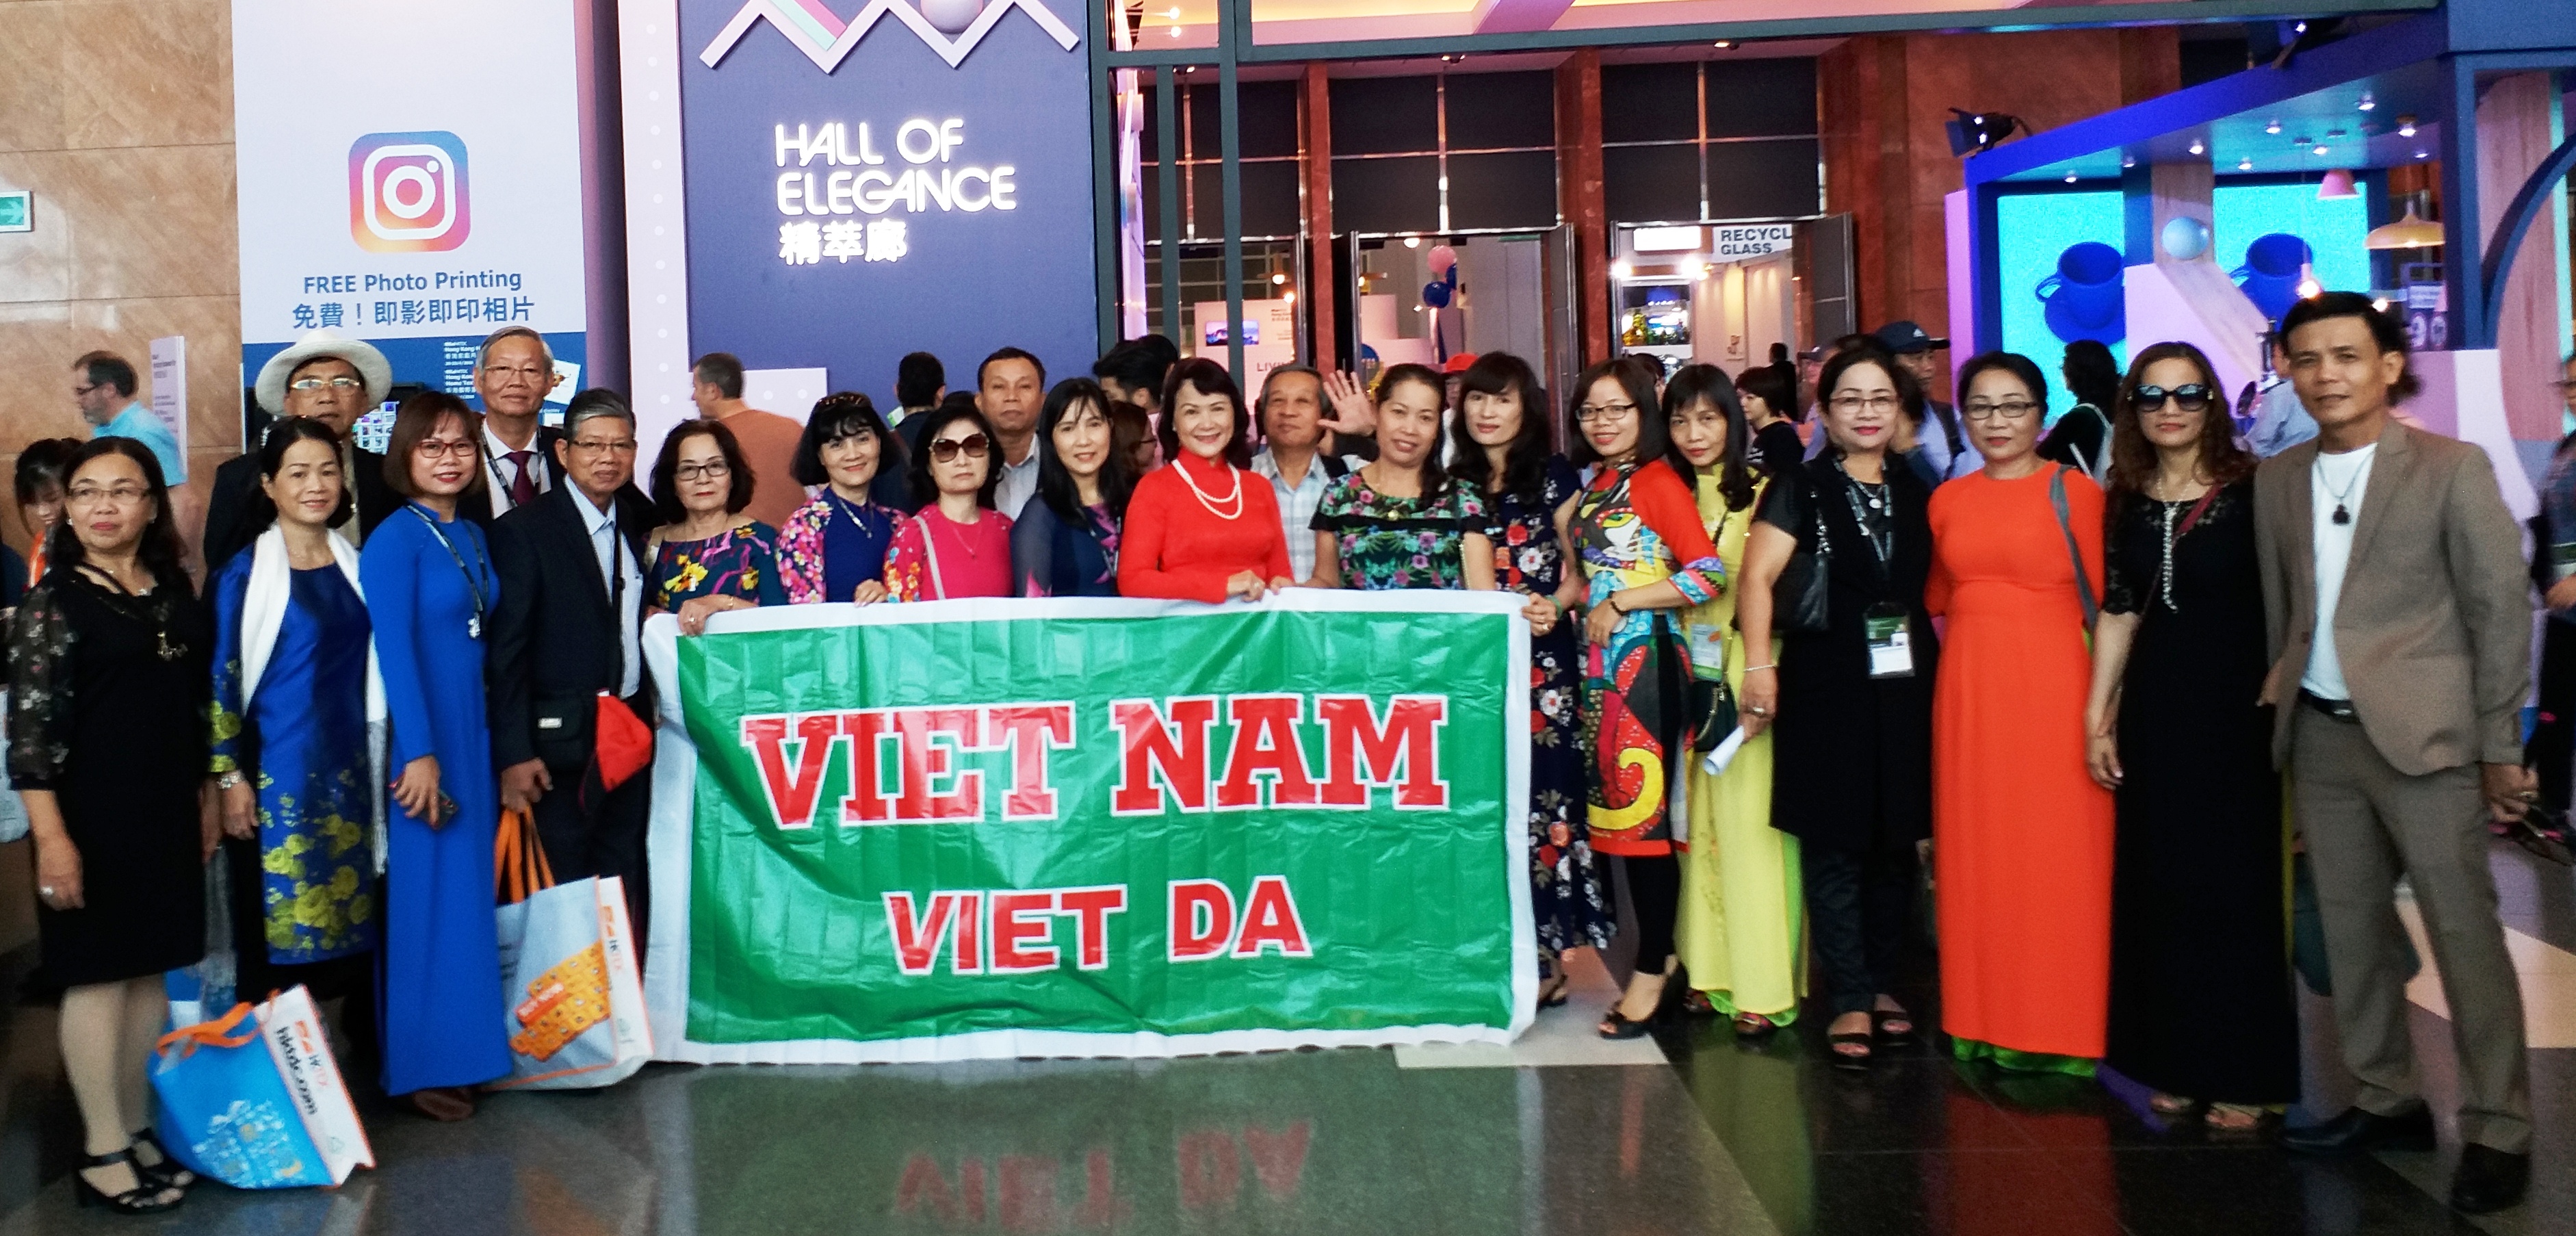 Đoàn Doanh nghiệp dự hội chợ hàng gia dụng tại Hồng Kông do Vietdatravel tổ chức năm 2018.